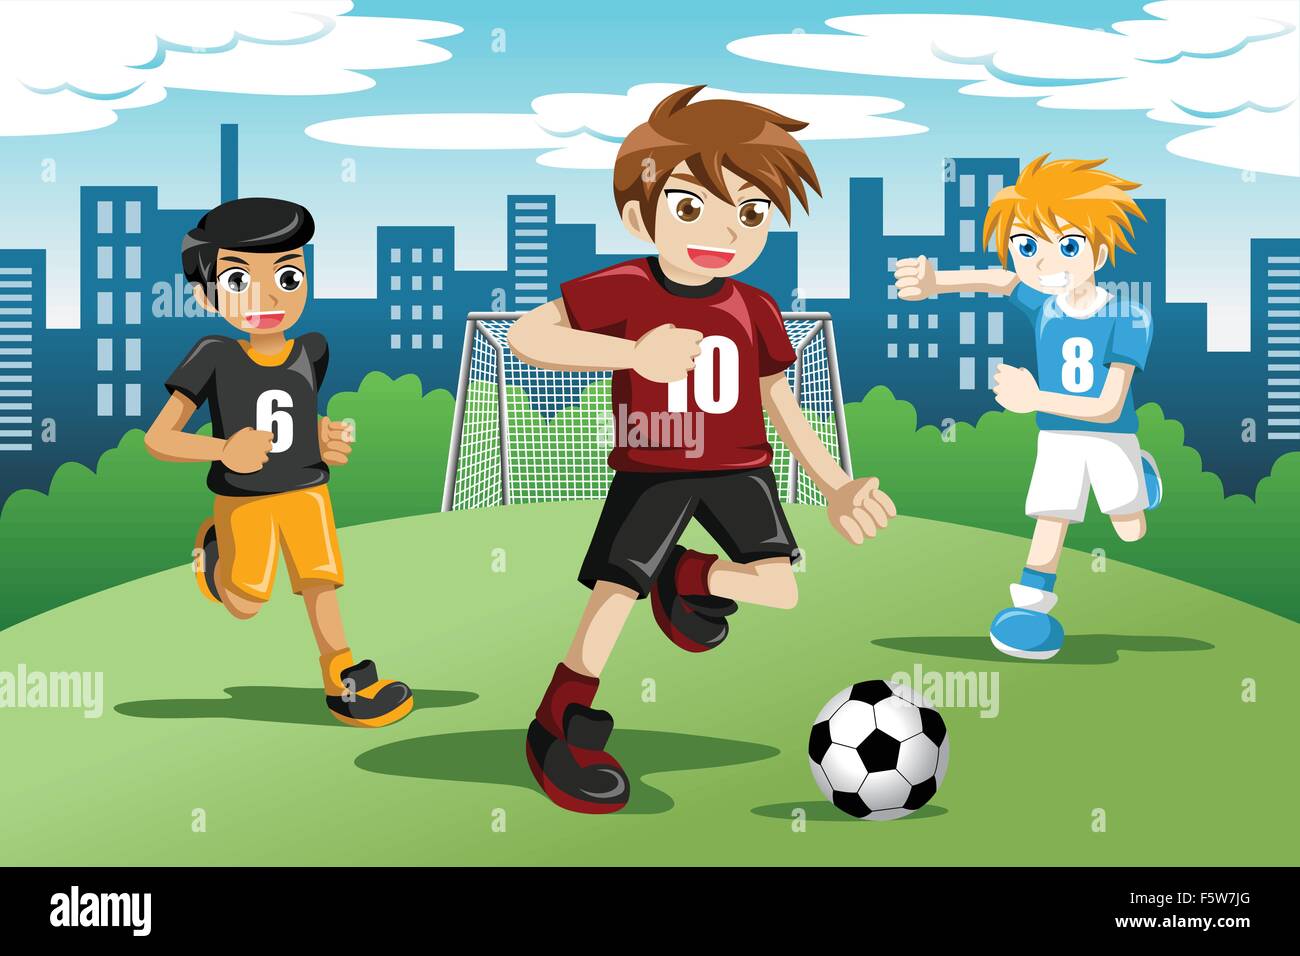 Eine Vektor-Illustration der glückliche Kinder Fußball spielen Stock Vektor